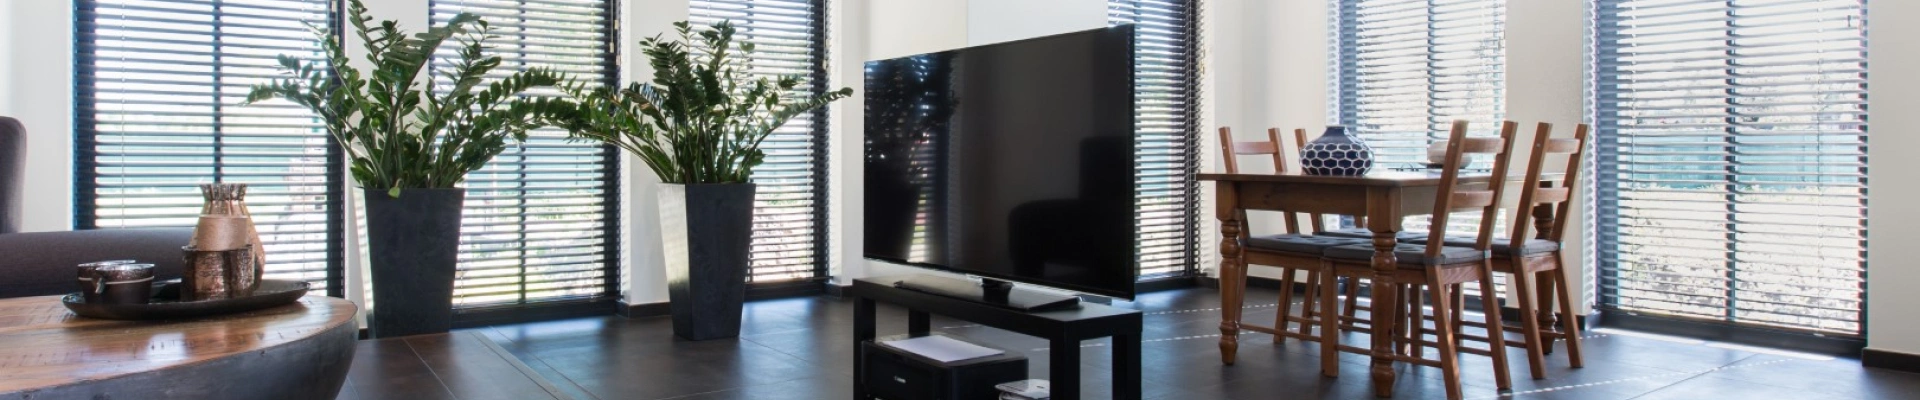 Zwarte aluminium blinds in woonkamer